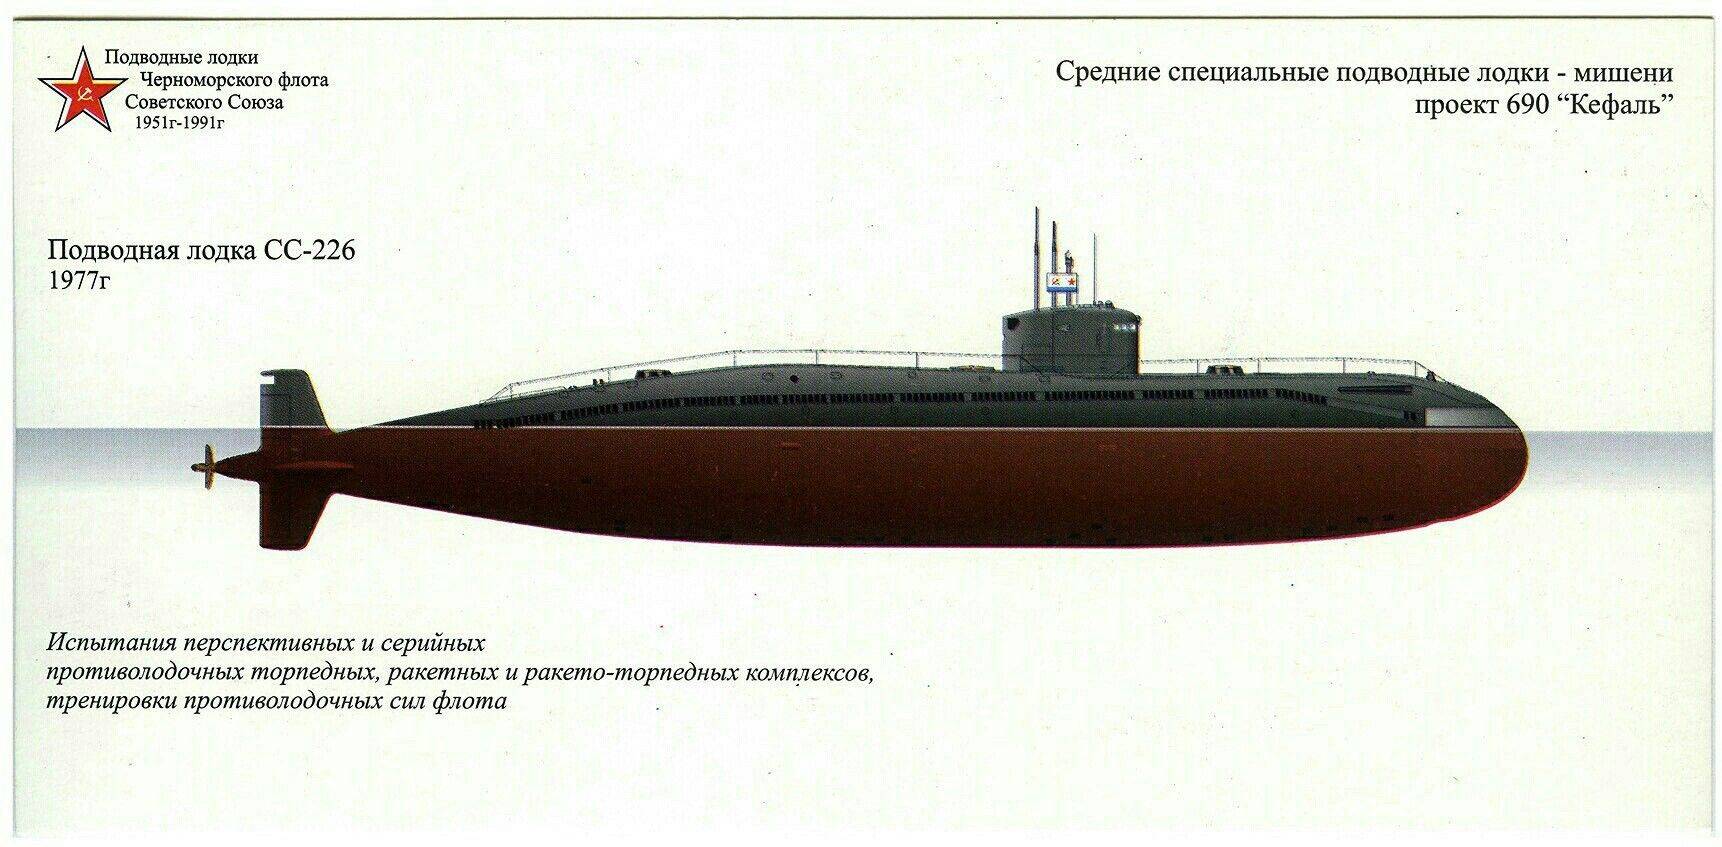 Подводные лодки типа «касатка»